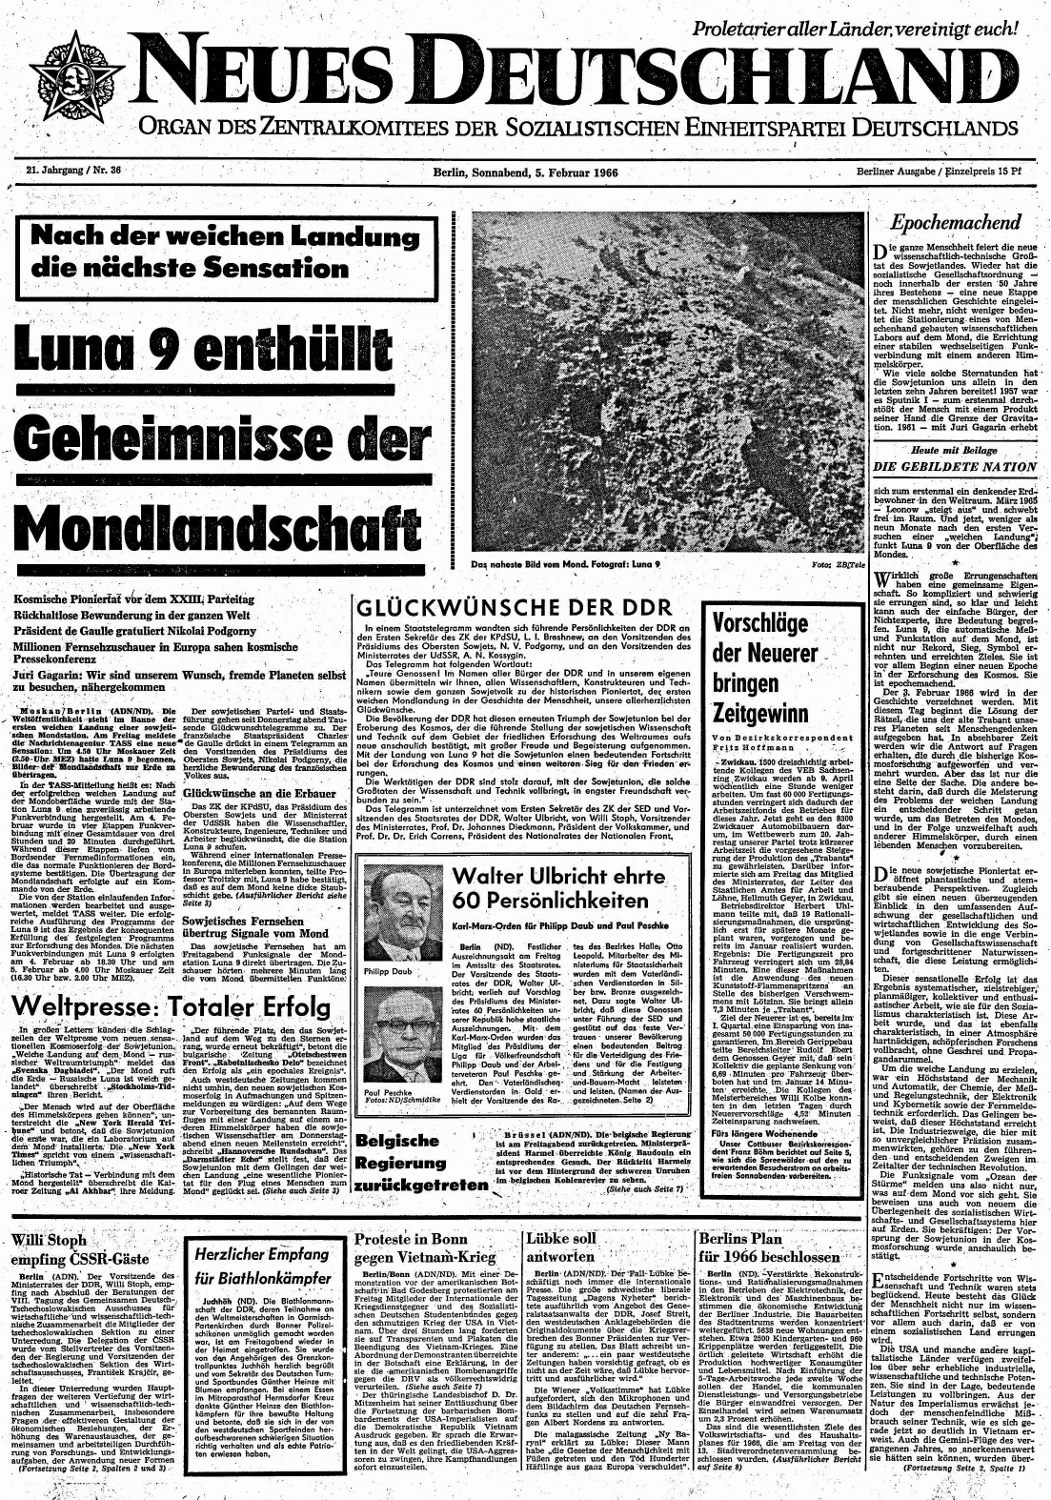 "Neues Deutschland", 5. Februar 1966